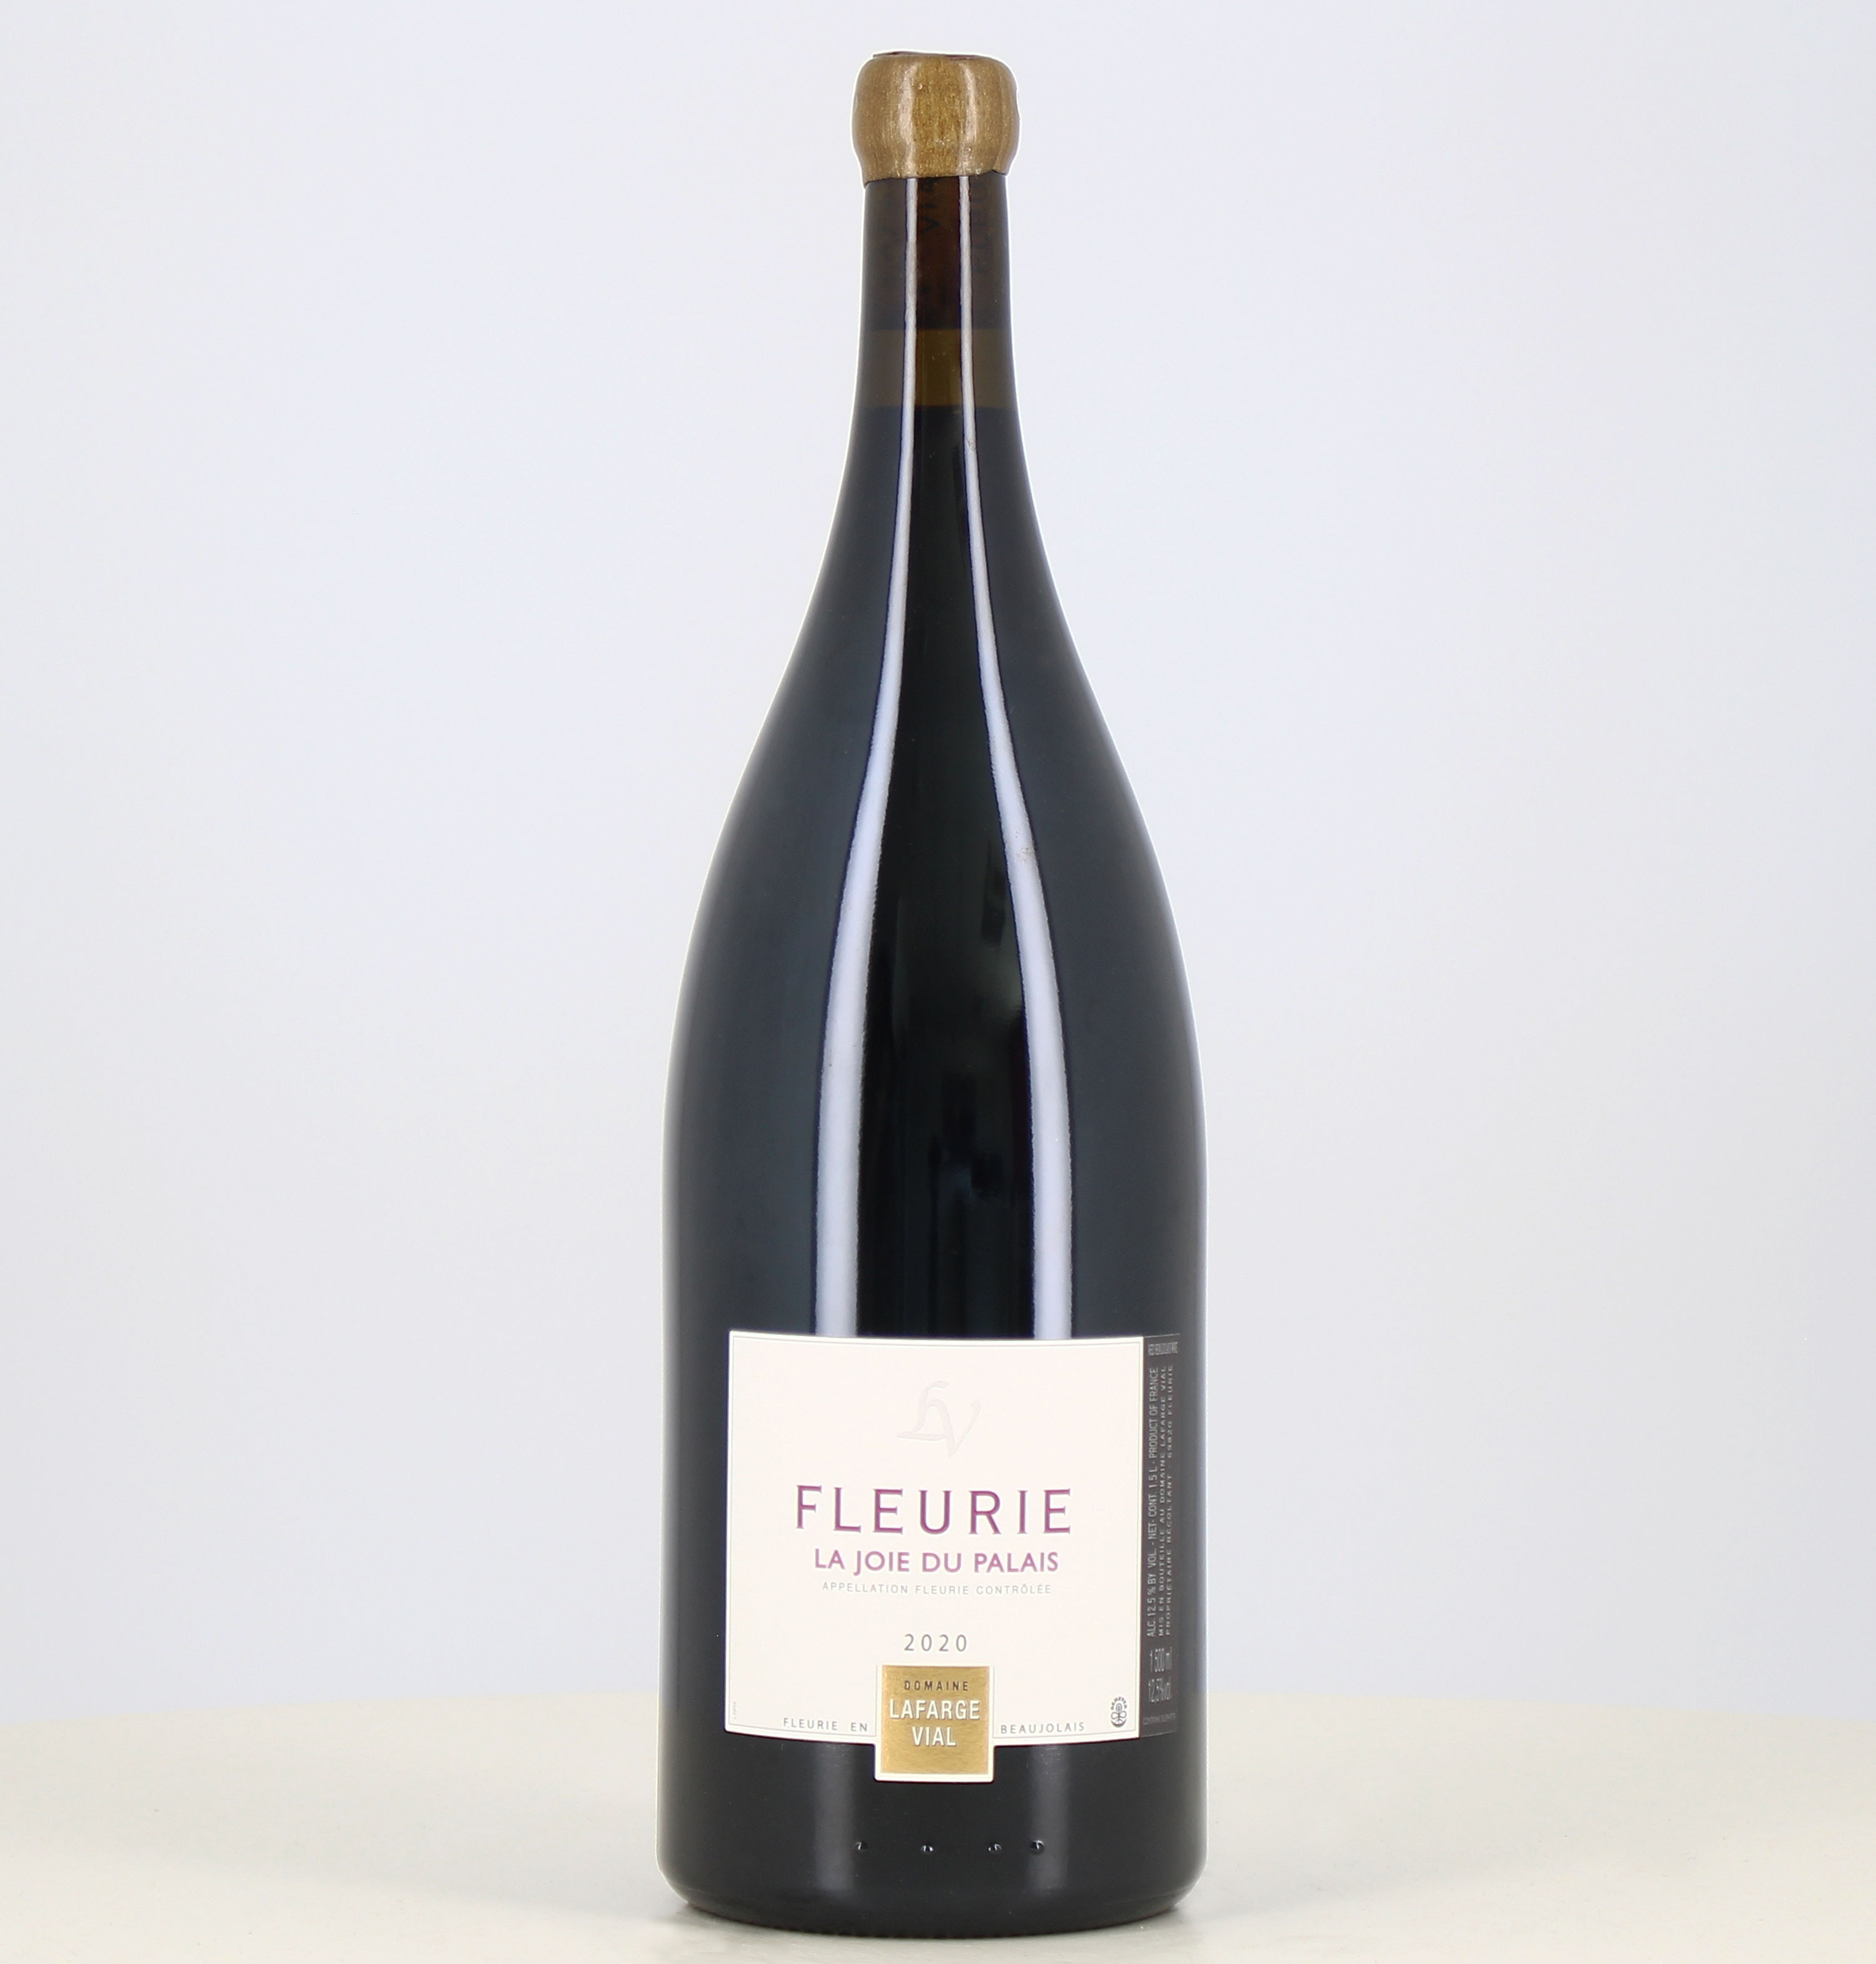 Magnum vin rouge Fleurie Joie du Palais domaine Lafarge Vial 2020 